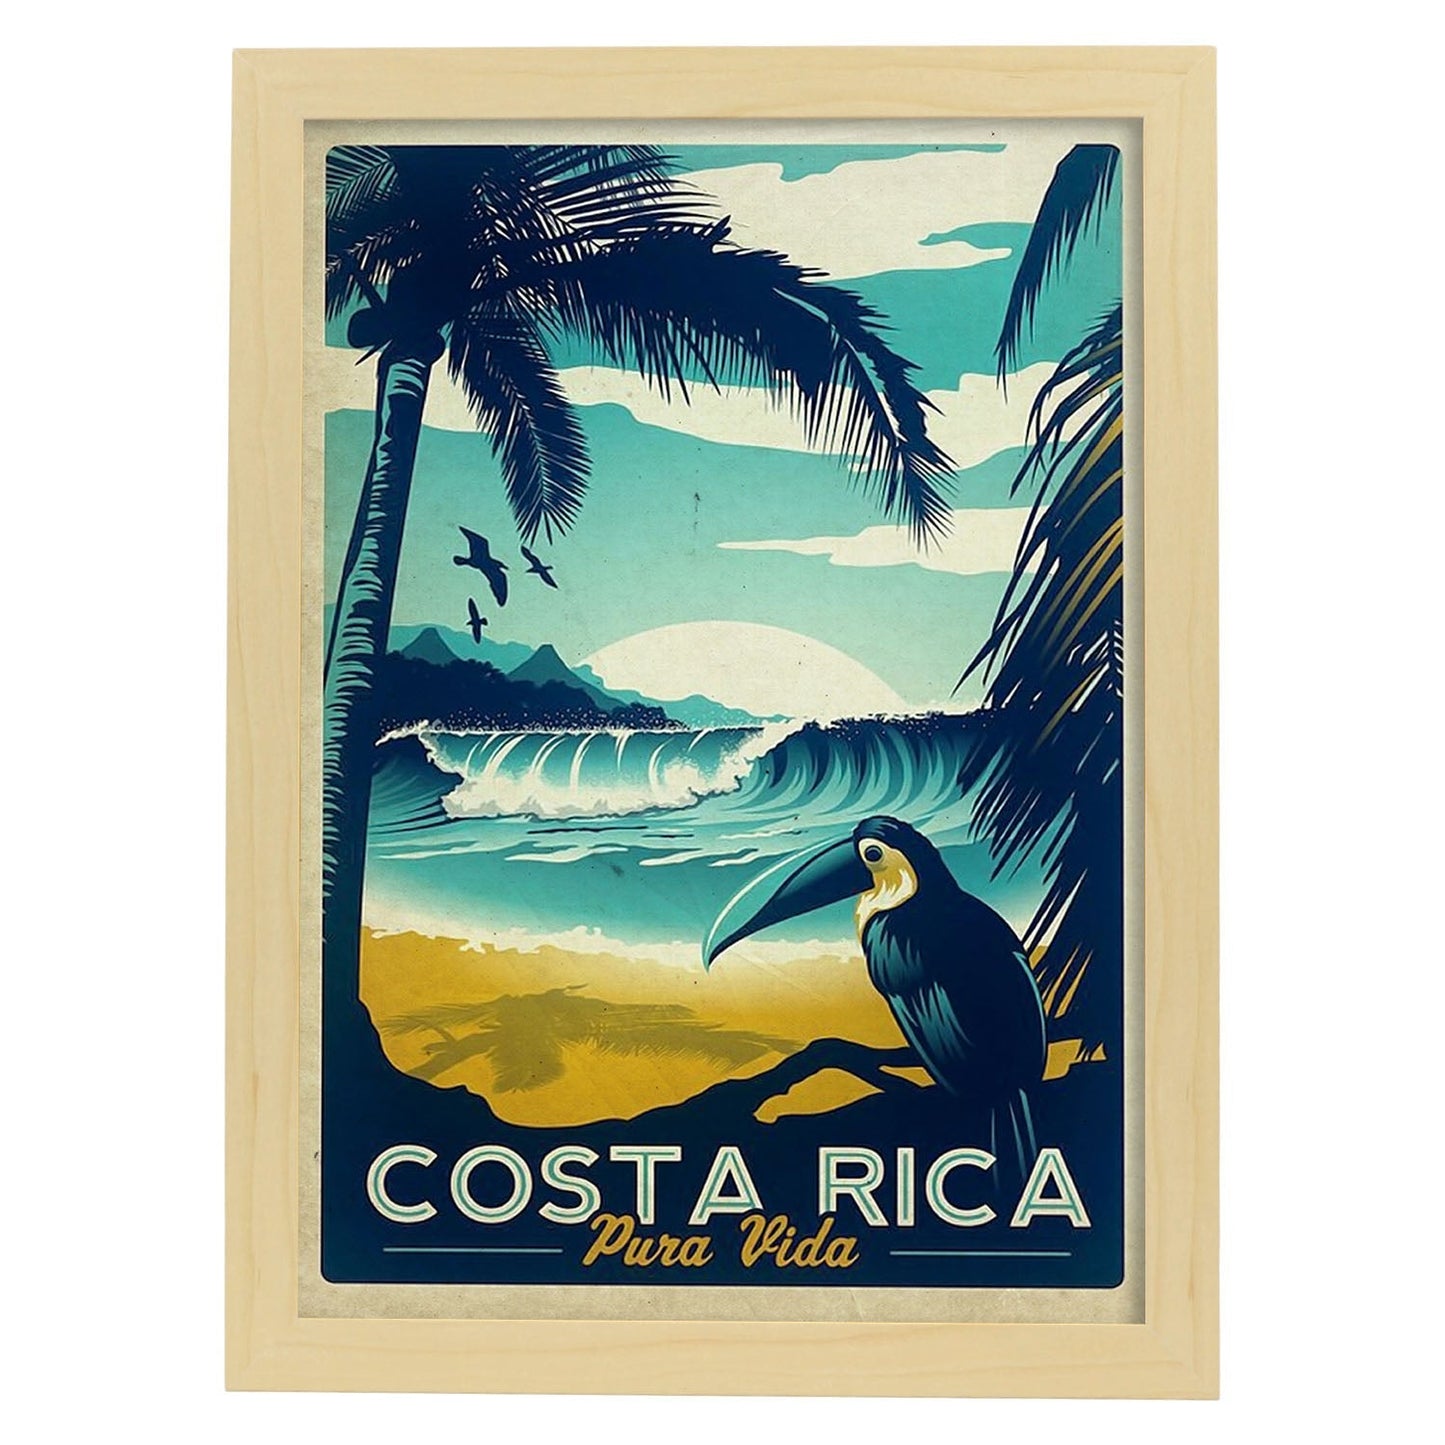 Poster vintage de Costa rica. con imágenes vintage y de publicidad antigua.-Artwork-Nacnic-A3-Marco Madera clara-Nacnic Estudio SL